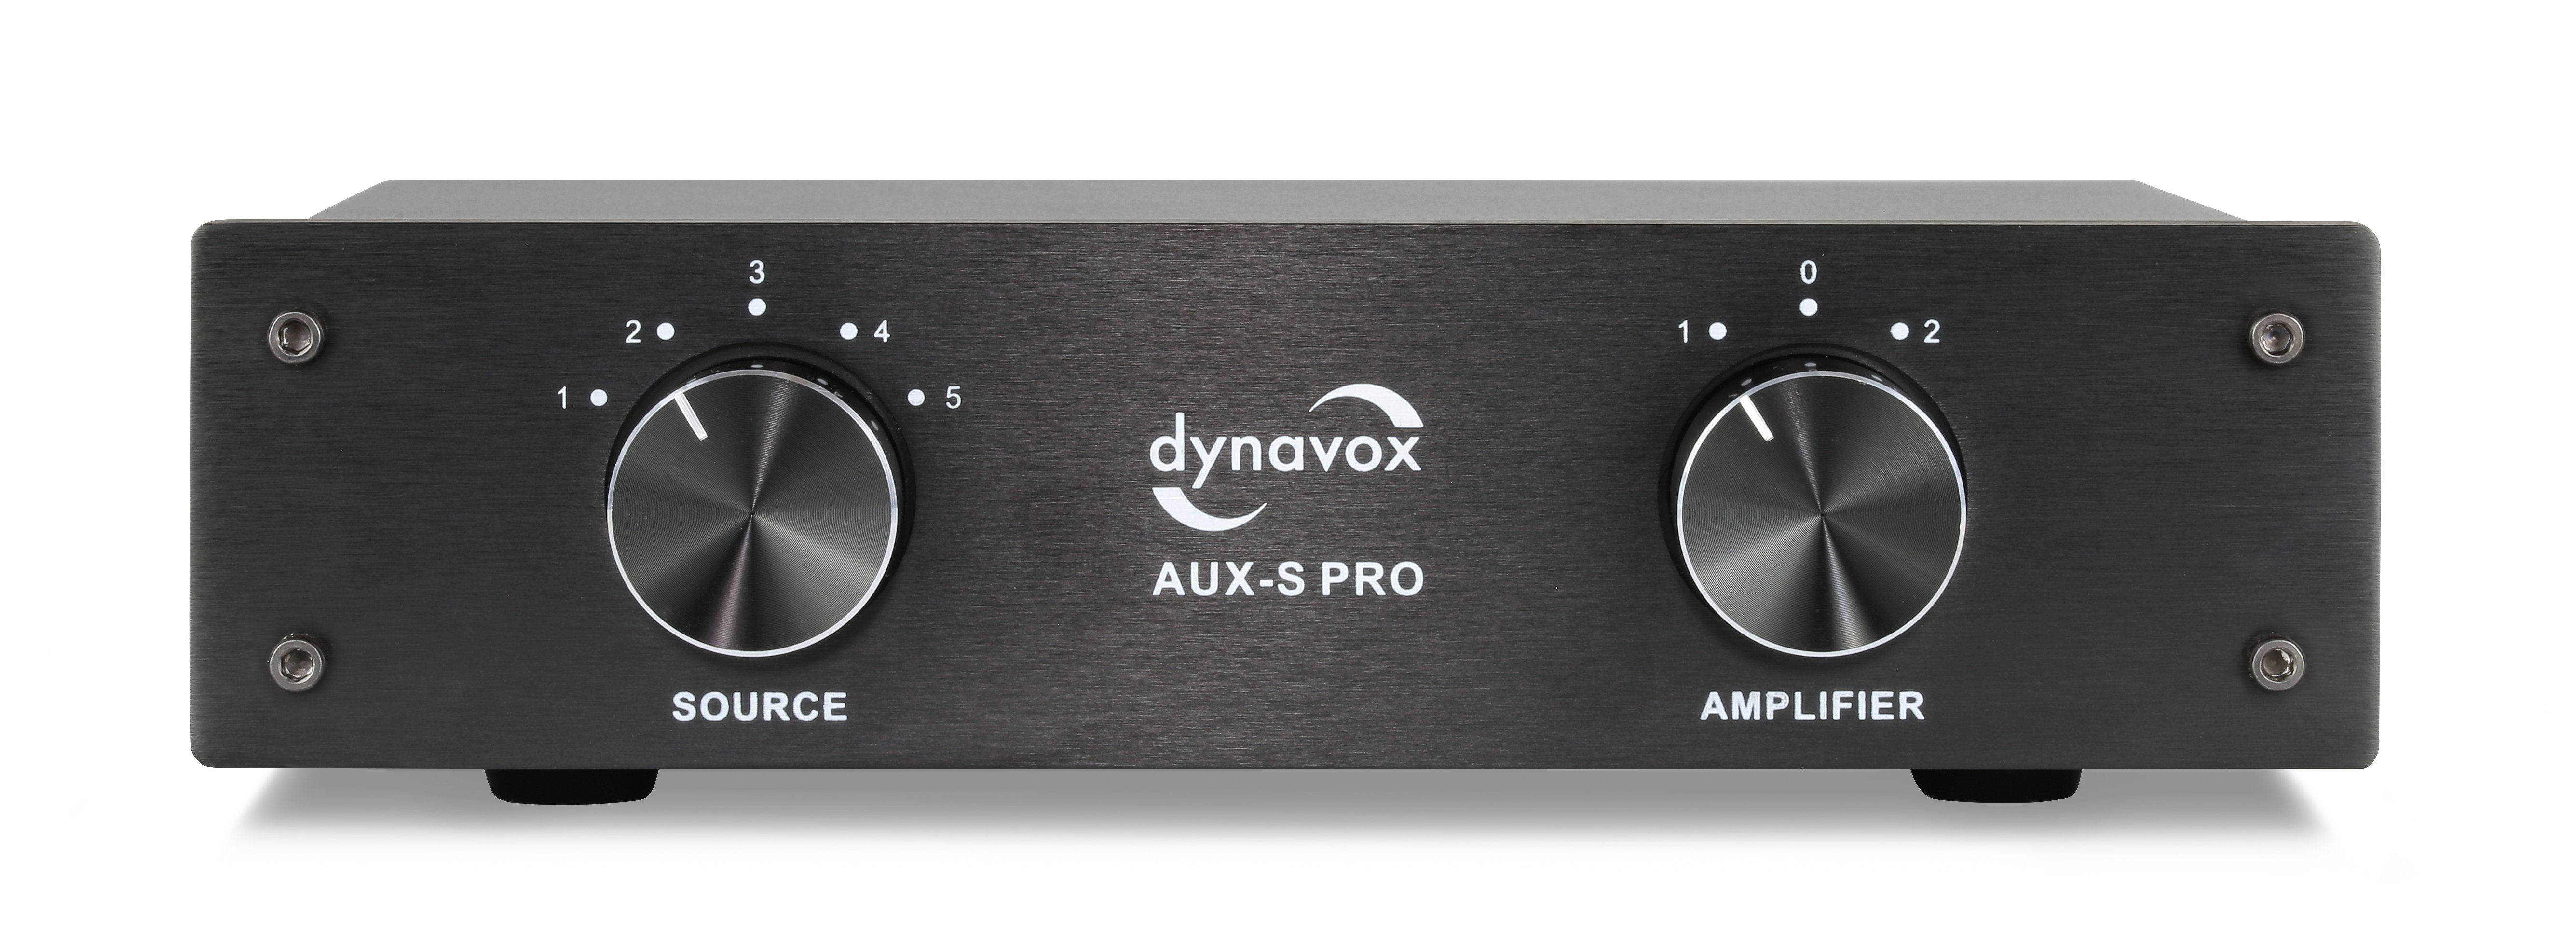 Dynavox AUX-S Pro Audioverstärker (Cinch-Erweiterungs-Umschalter, 5 Cinch-Eingänge, 2 Verstärker-Eingänge) Schwarz